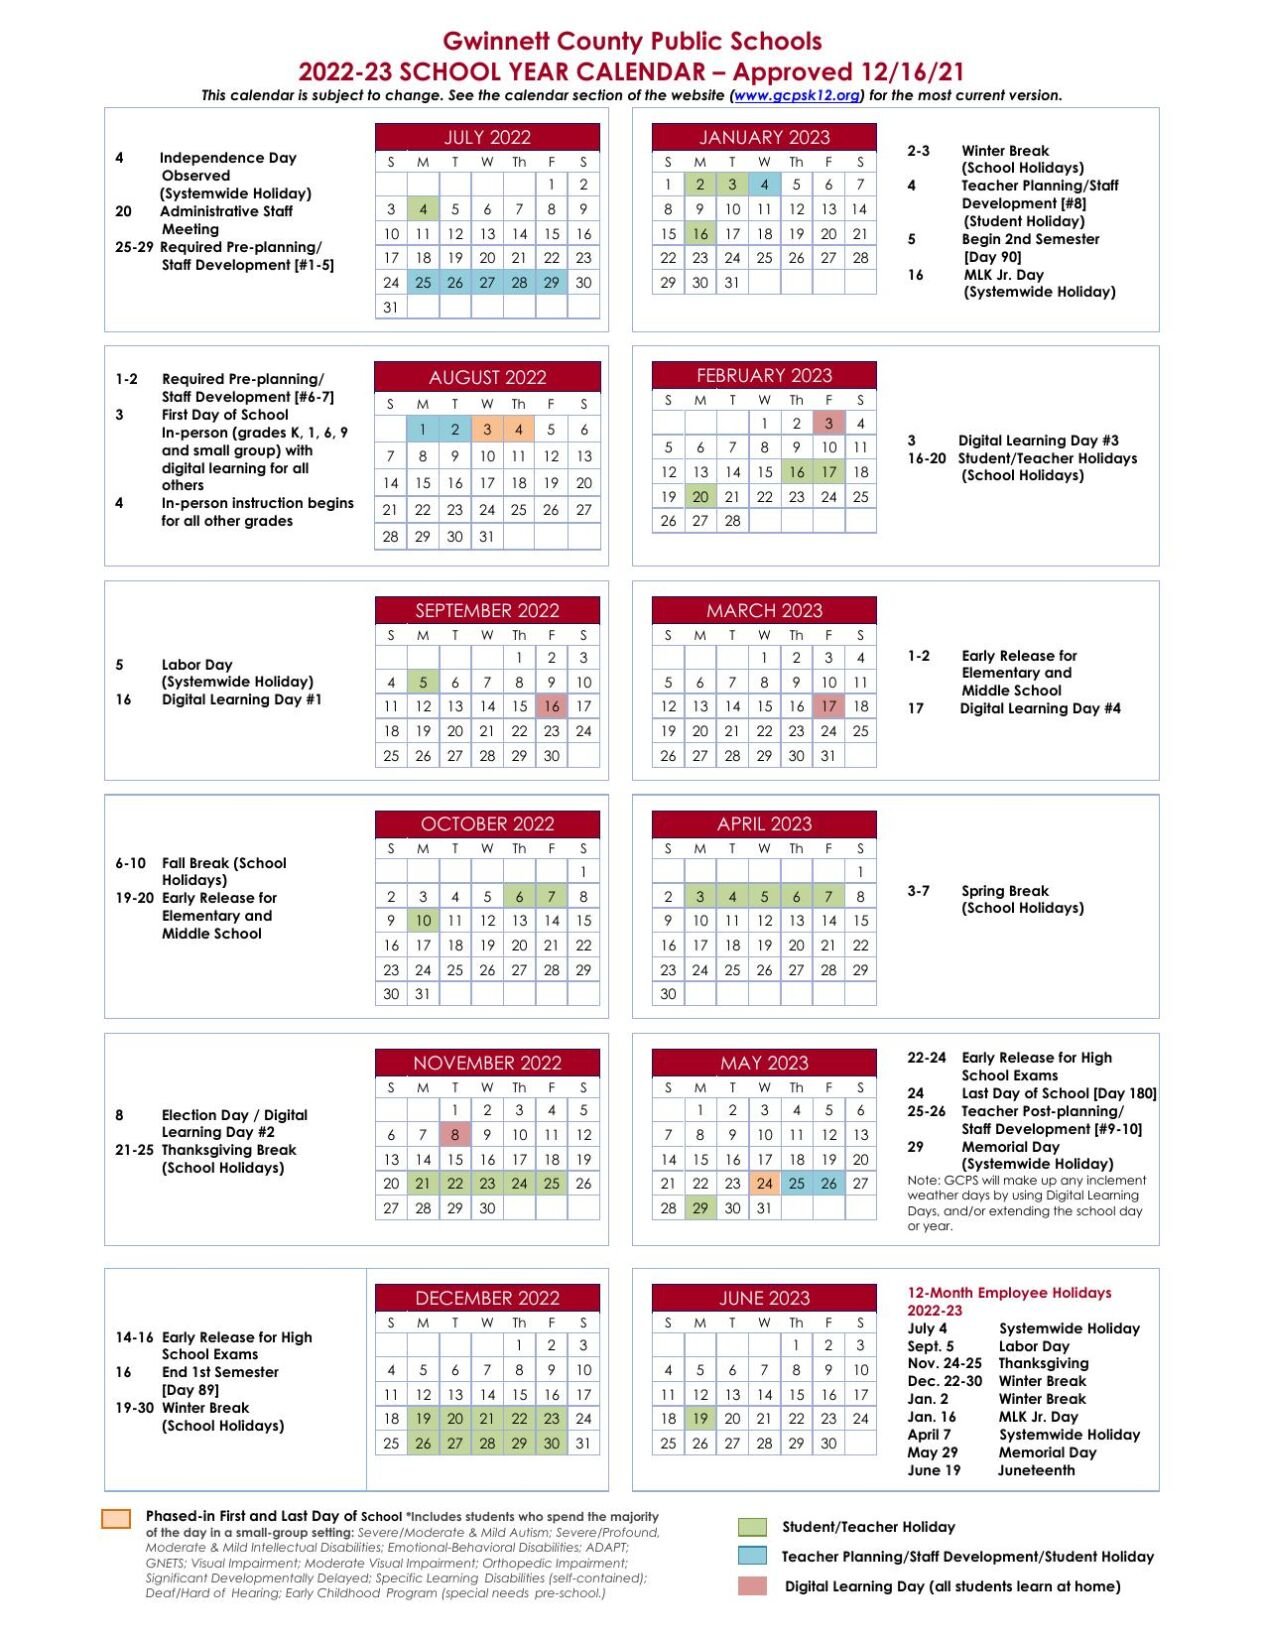 Gwinnett School Calendar 2023 2024 Get Calendar 2023 Update